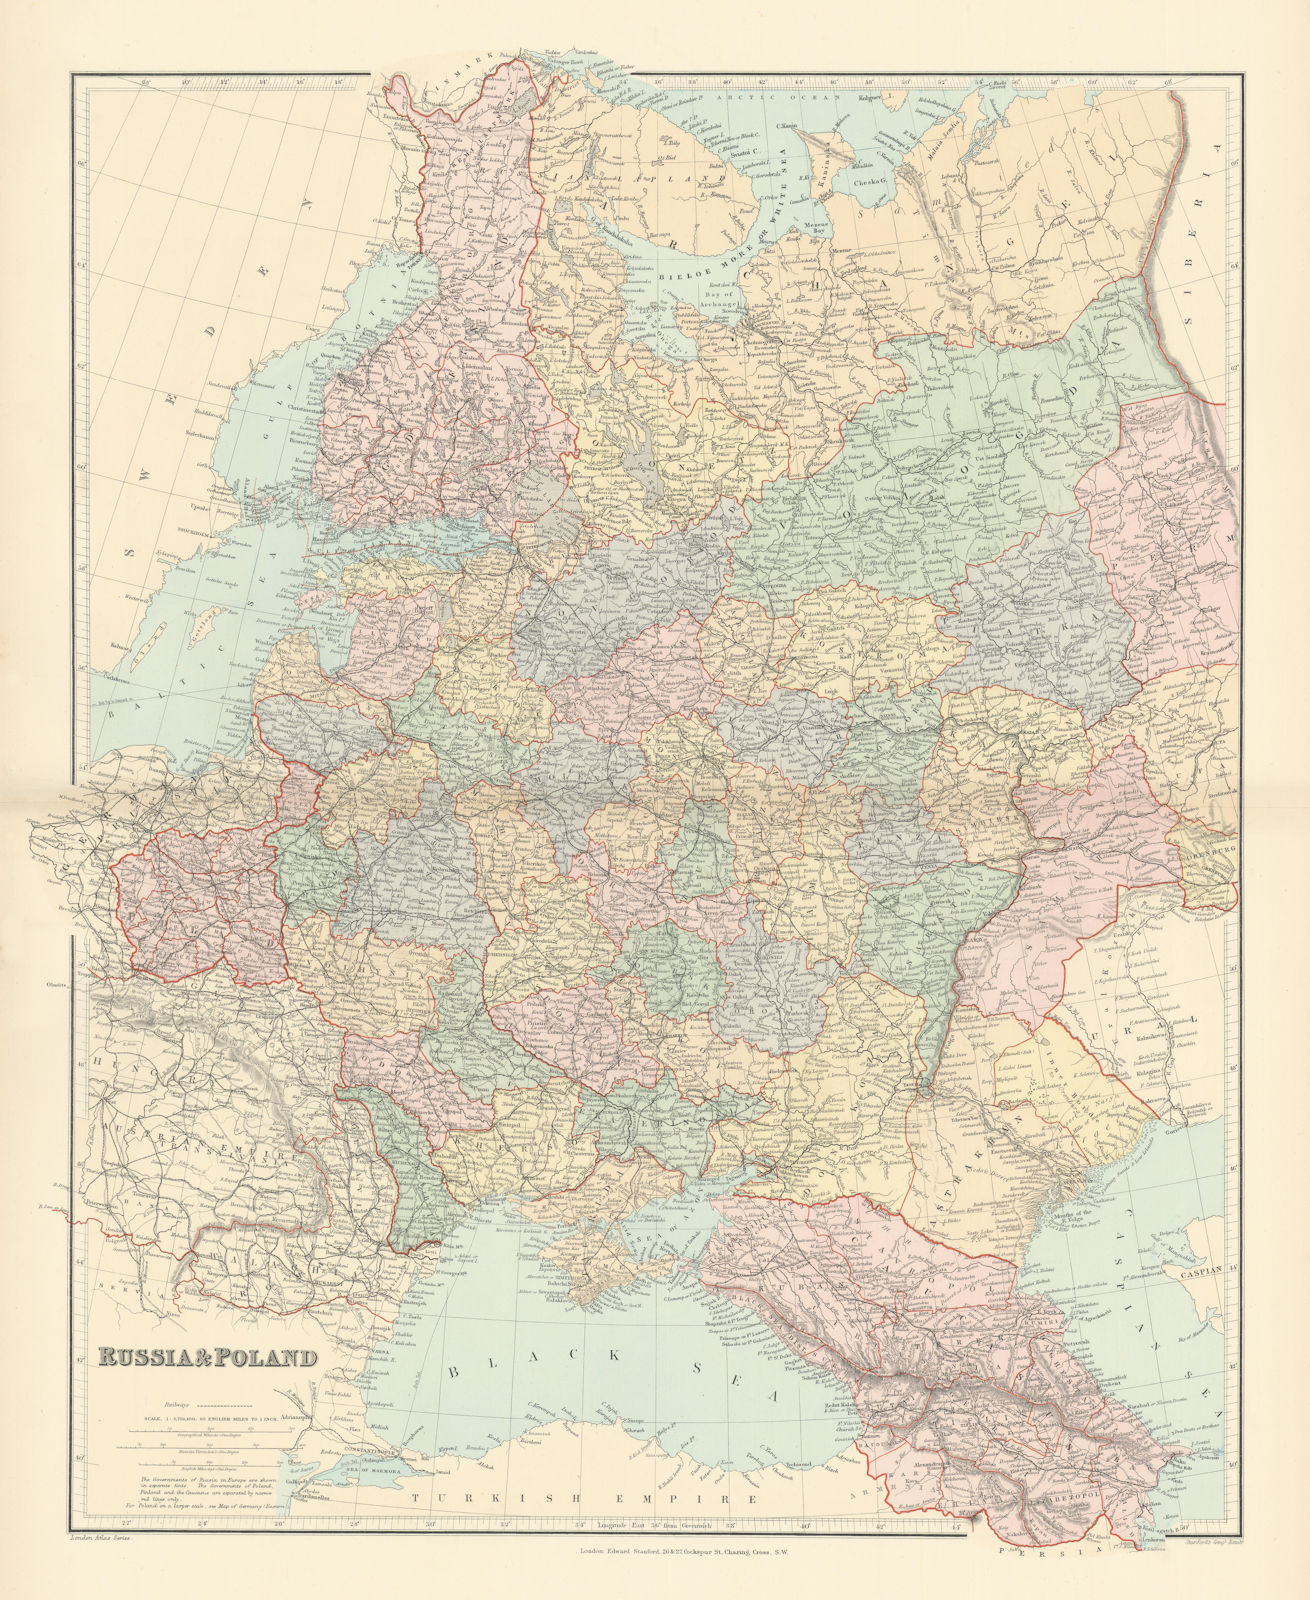 Russia & Poland. Caucasus. Republics krais oblasts railways. STANFORD 1896 map